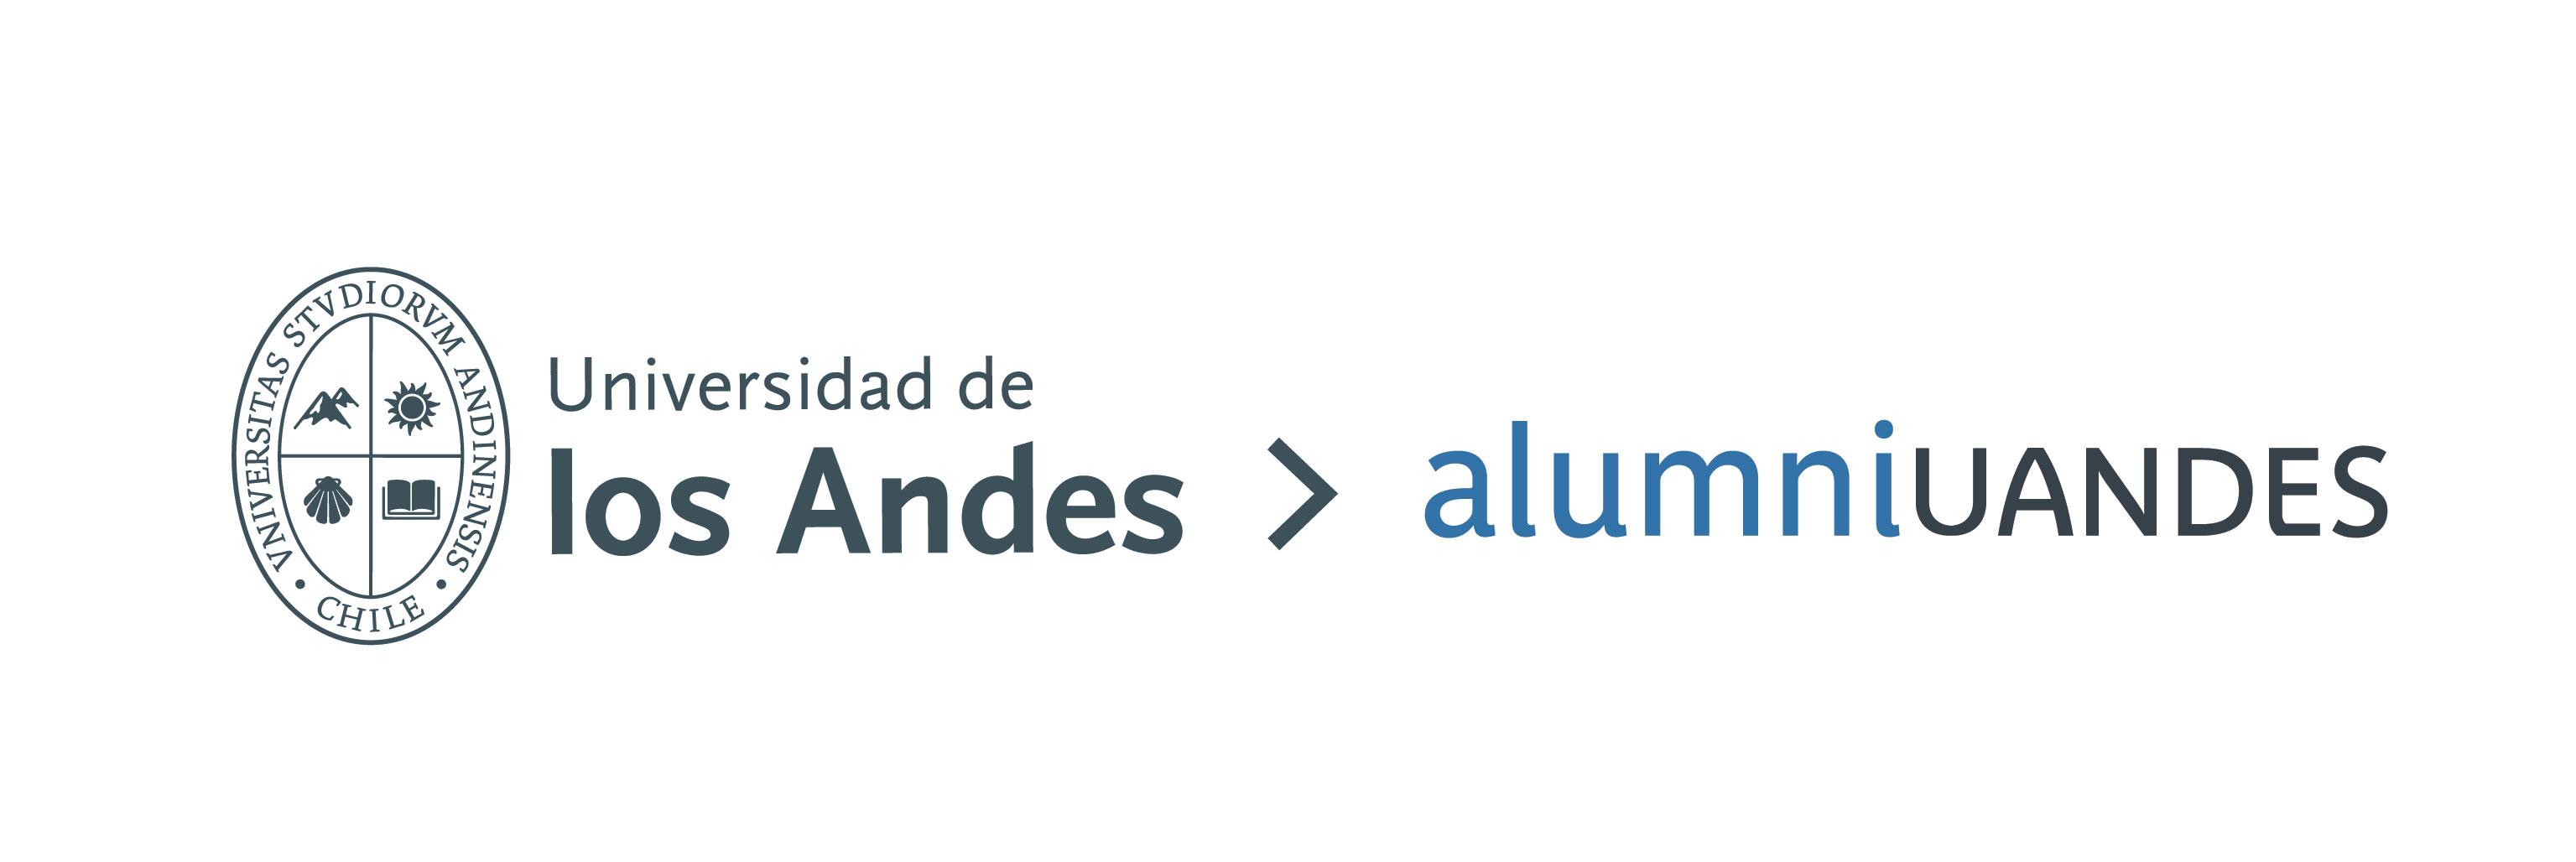 alumni_uandes